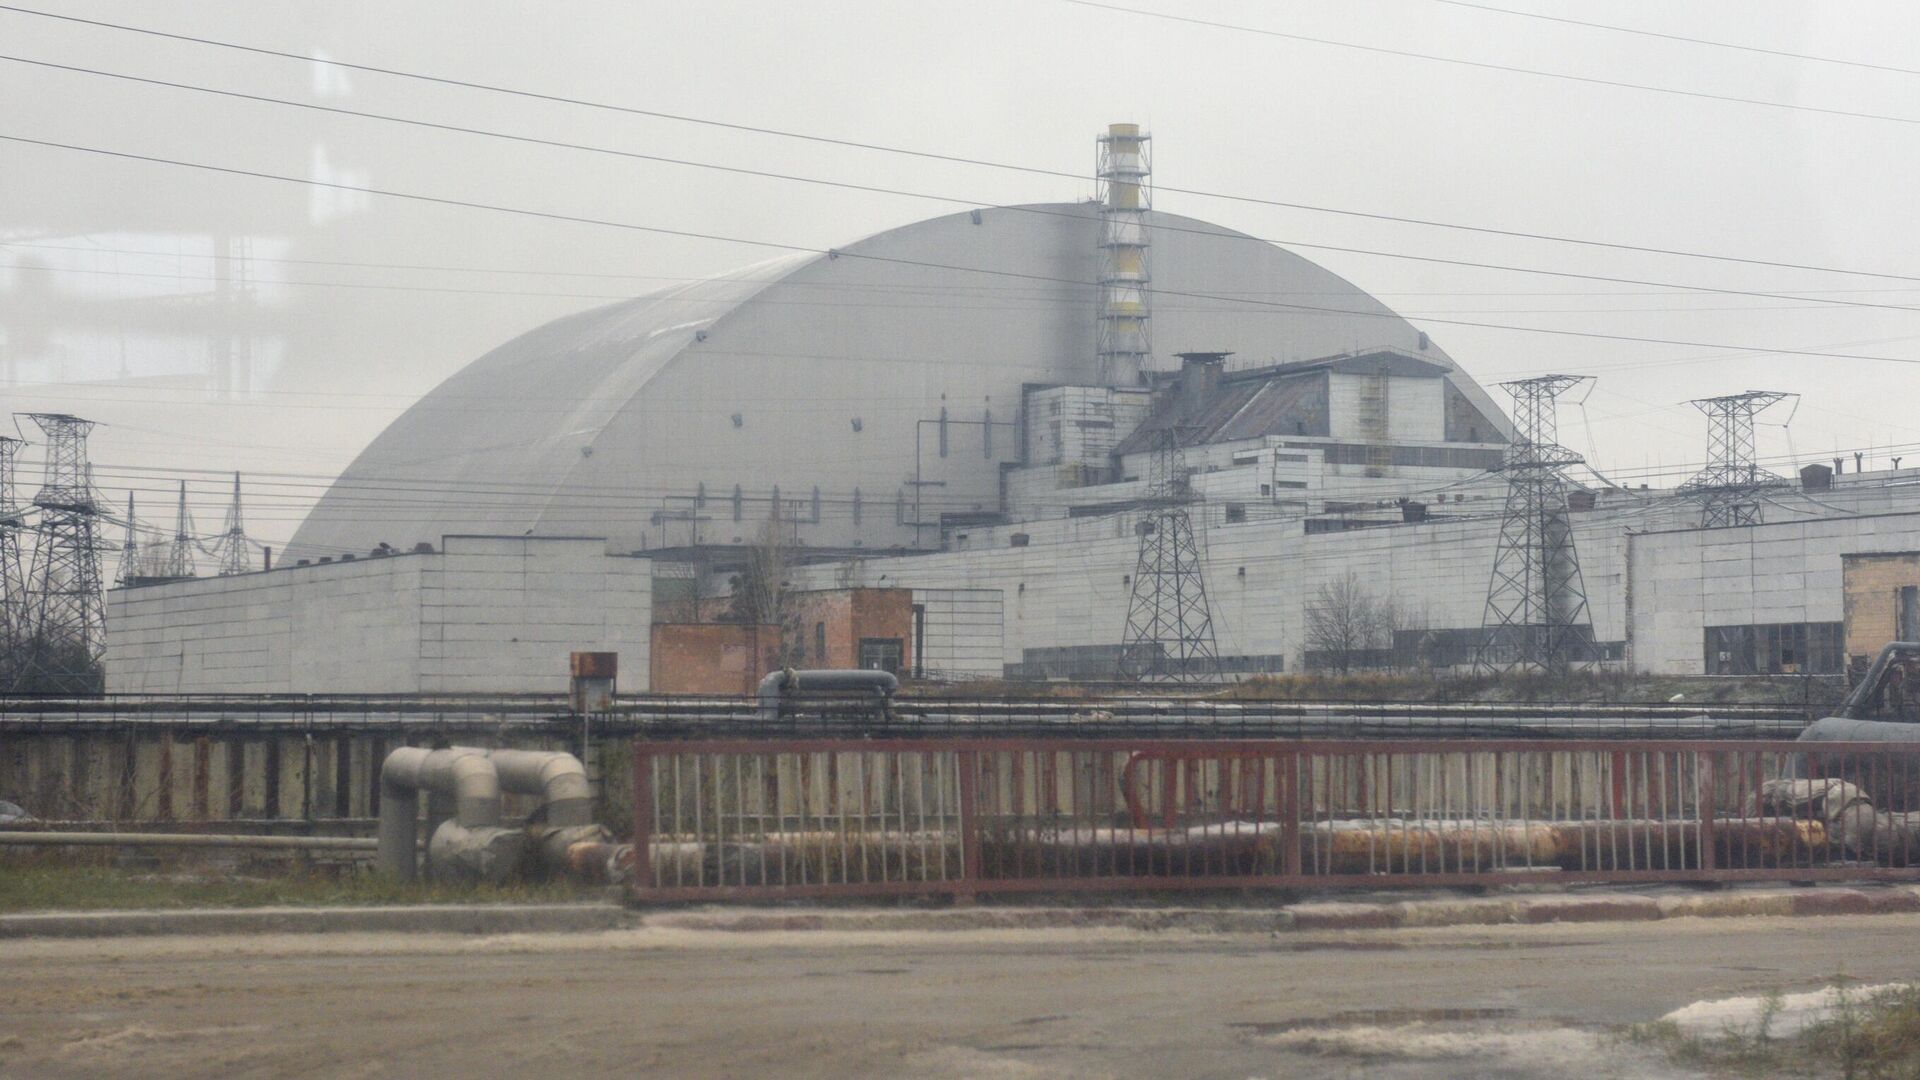 Изоляционное арочное сооружение над разрушенным в результате аварии 4-м энергоблоком Чернобыльской АЭС  - РИА Новости, 1920, 29.12.2020